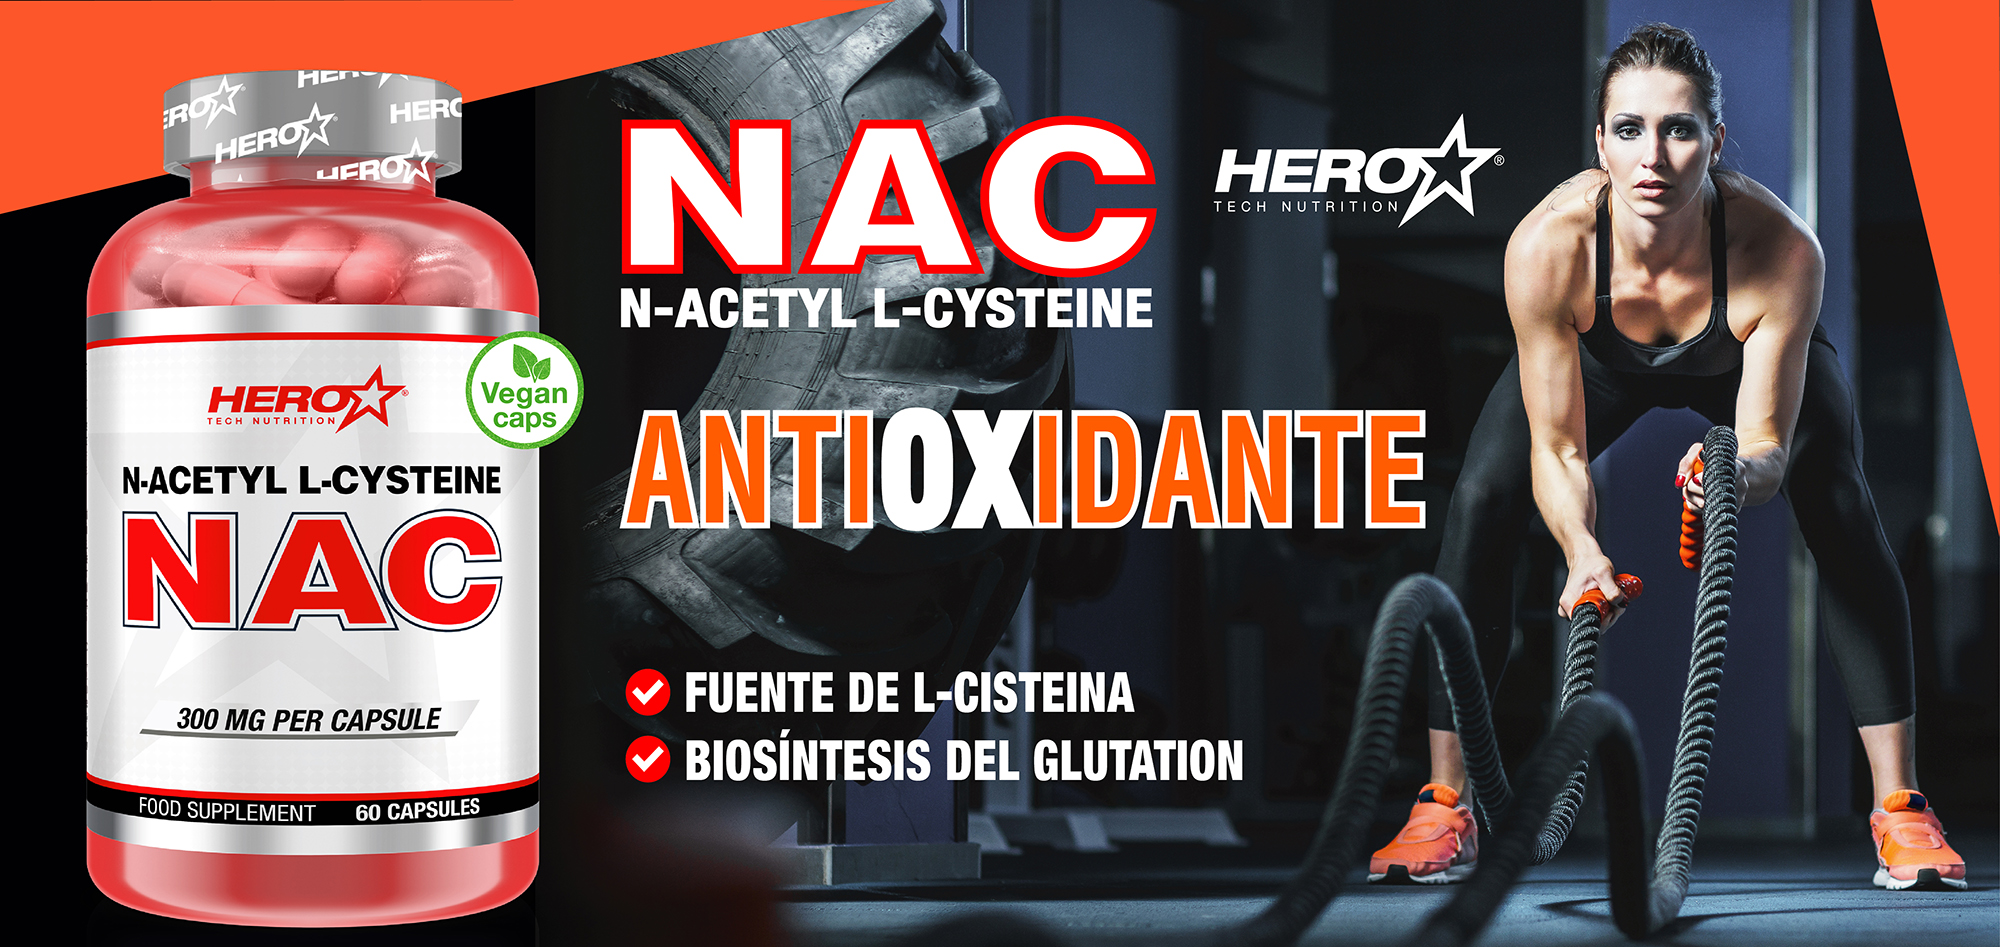 NAC ACETIL CISTEINA ANTIOXIDANTE HERO TECH NUTRITION